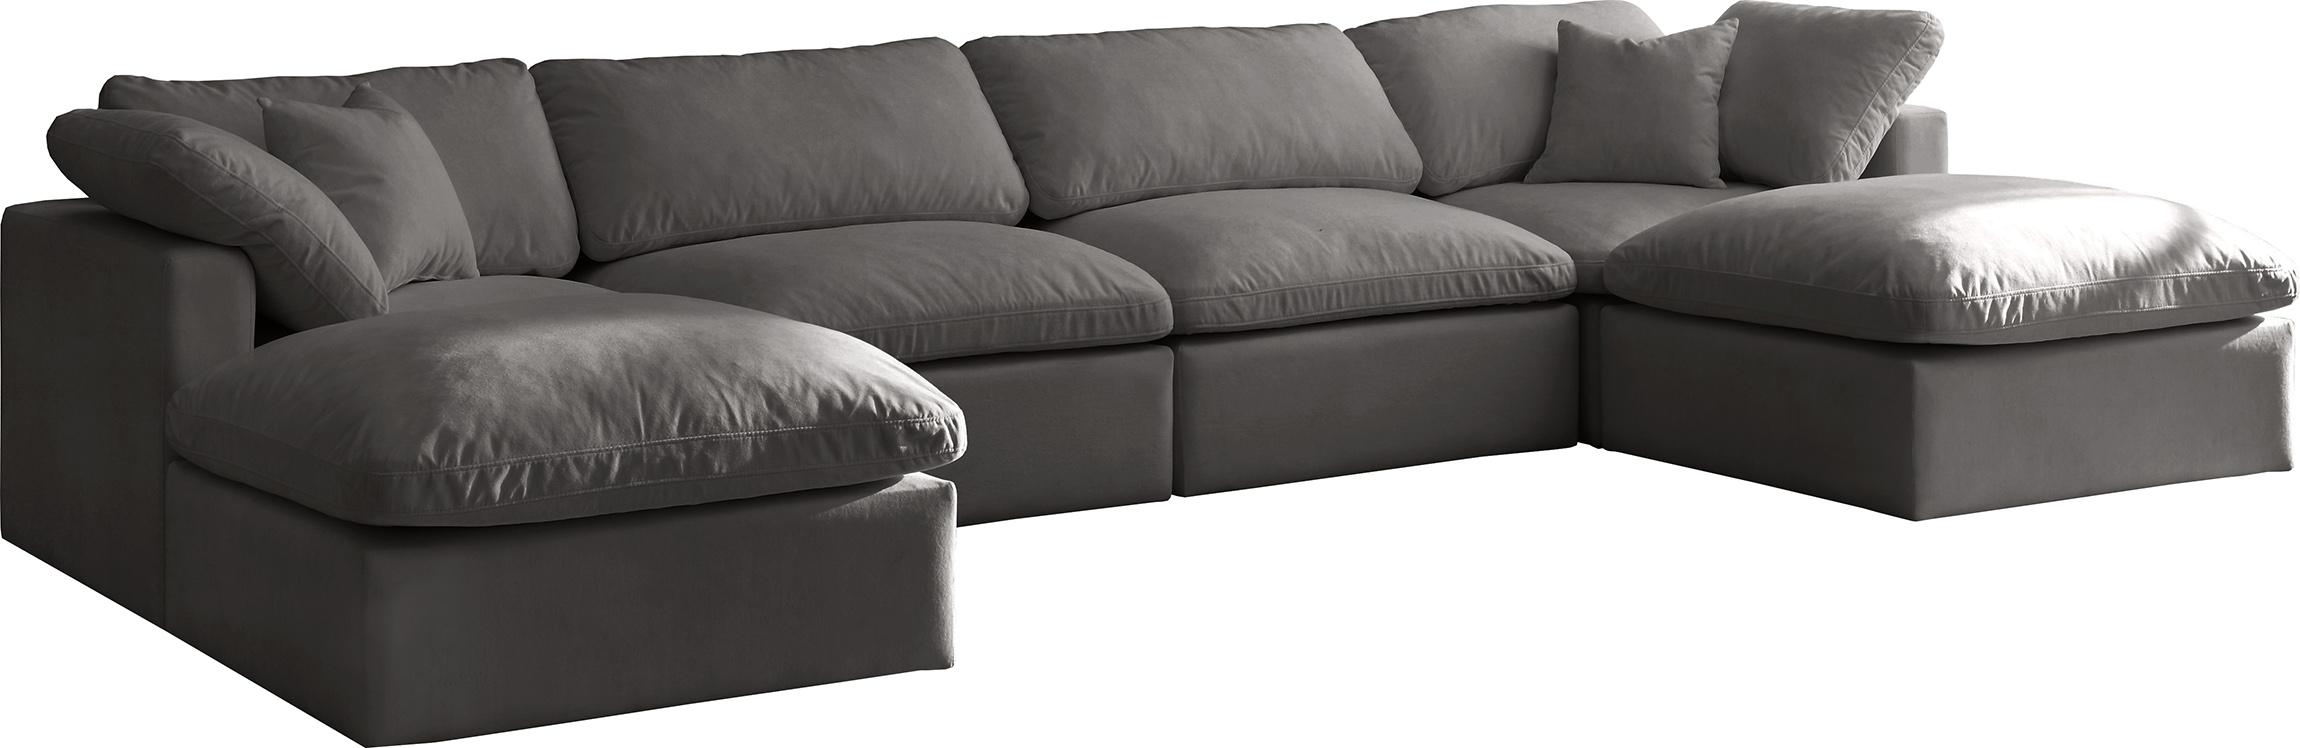 Soflex Cloud GREY Modular Sectional Sofa